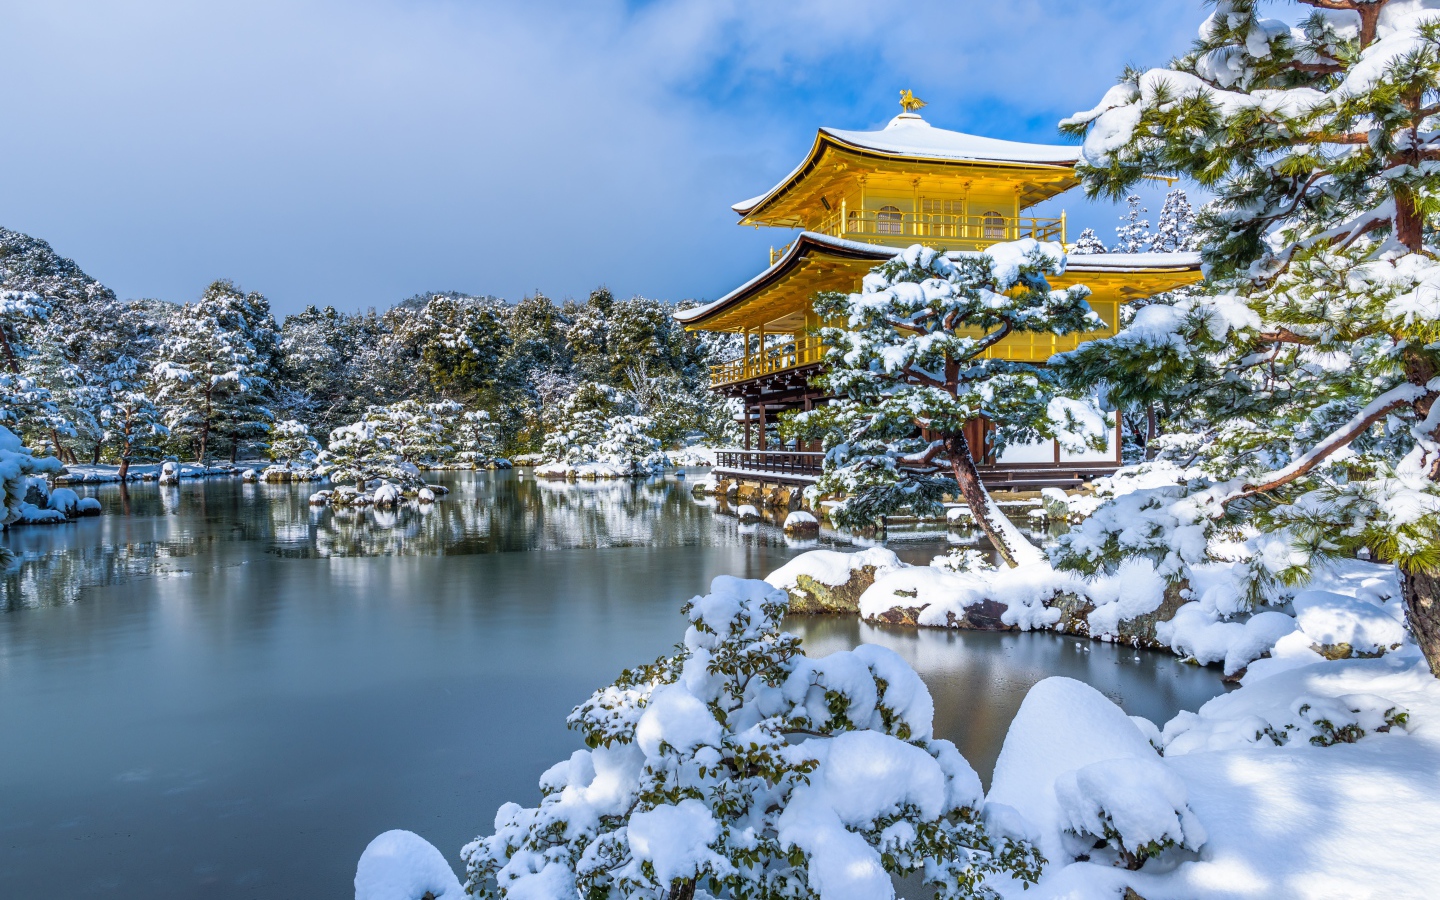 Покрытые снегом деревья и заледеневший пруд у храма Кинкаку-дзи зимой, Япония